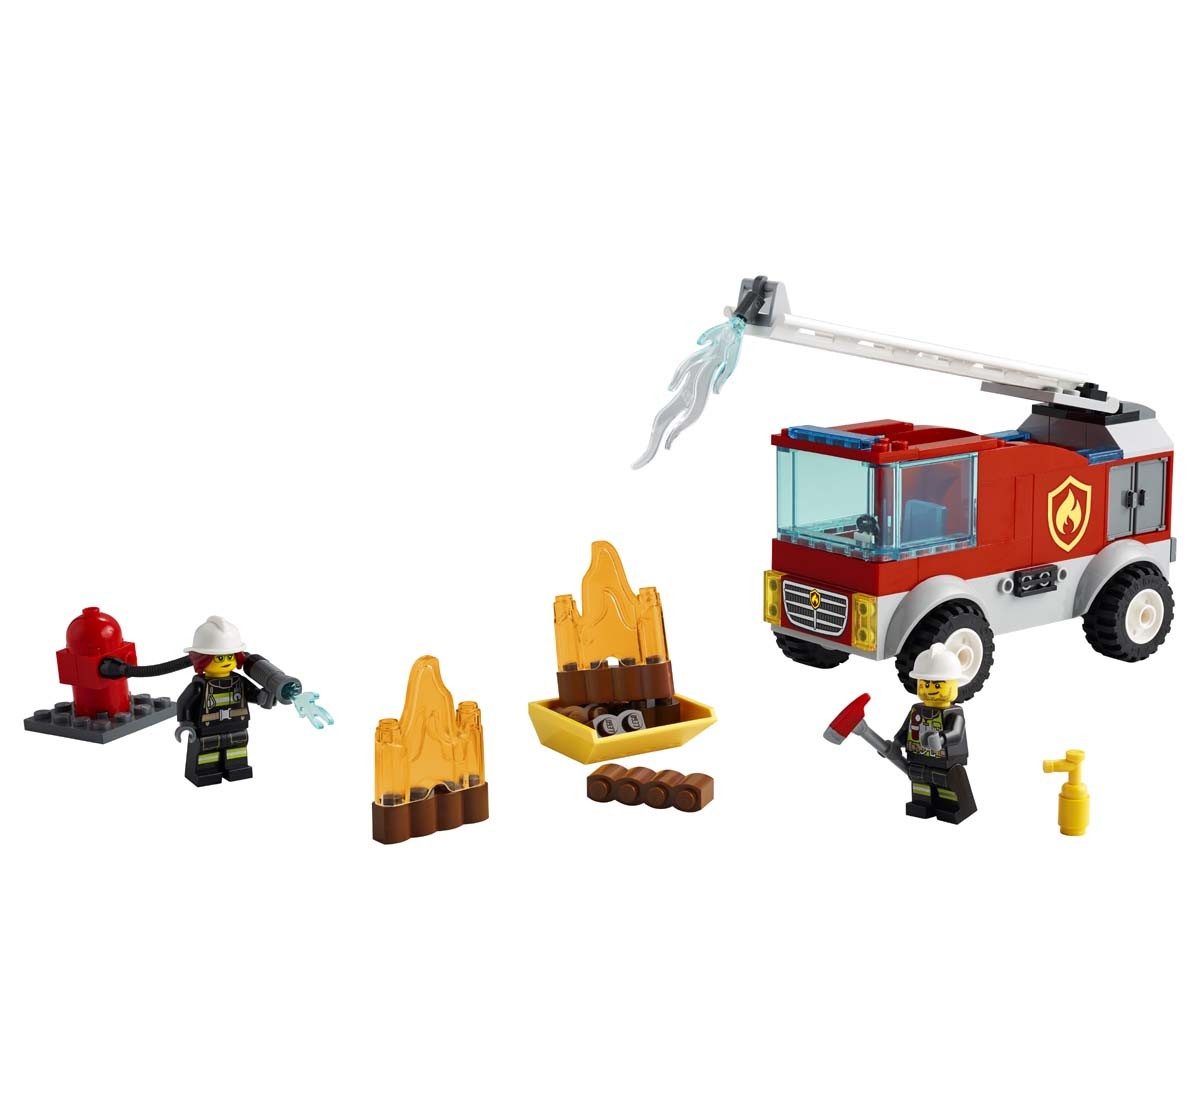 Lego Fire Ladder Truck Lego Blocks for Kids Age 4Y+